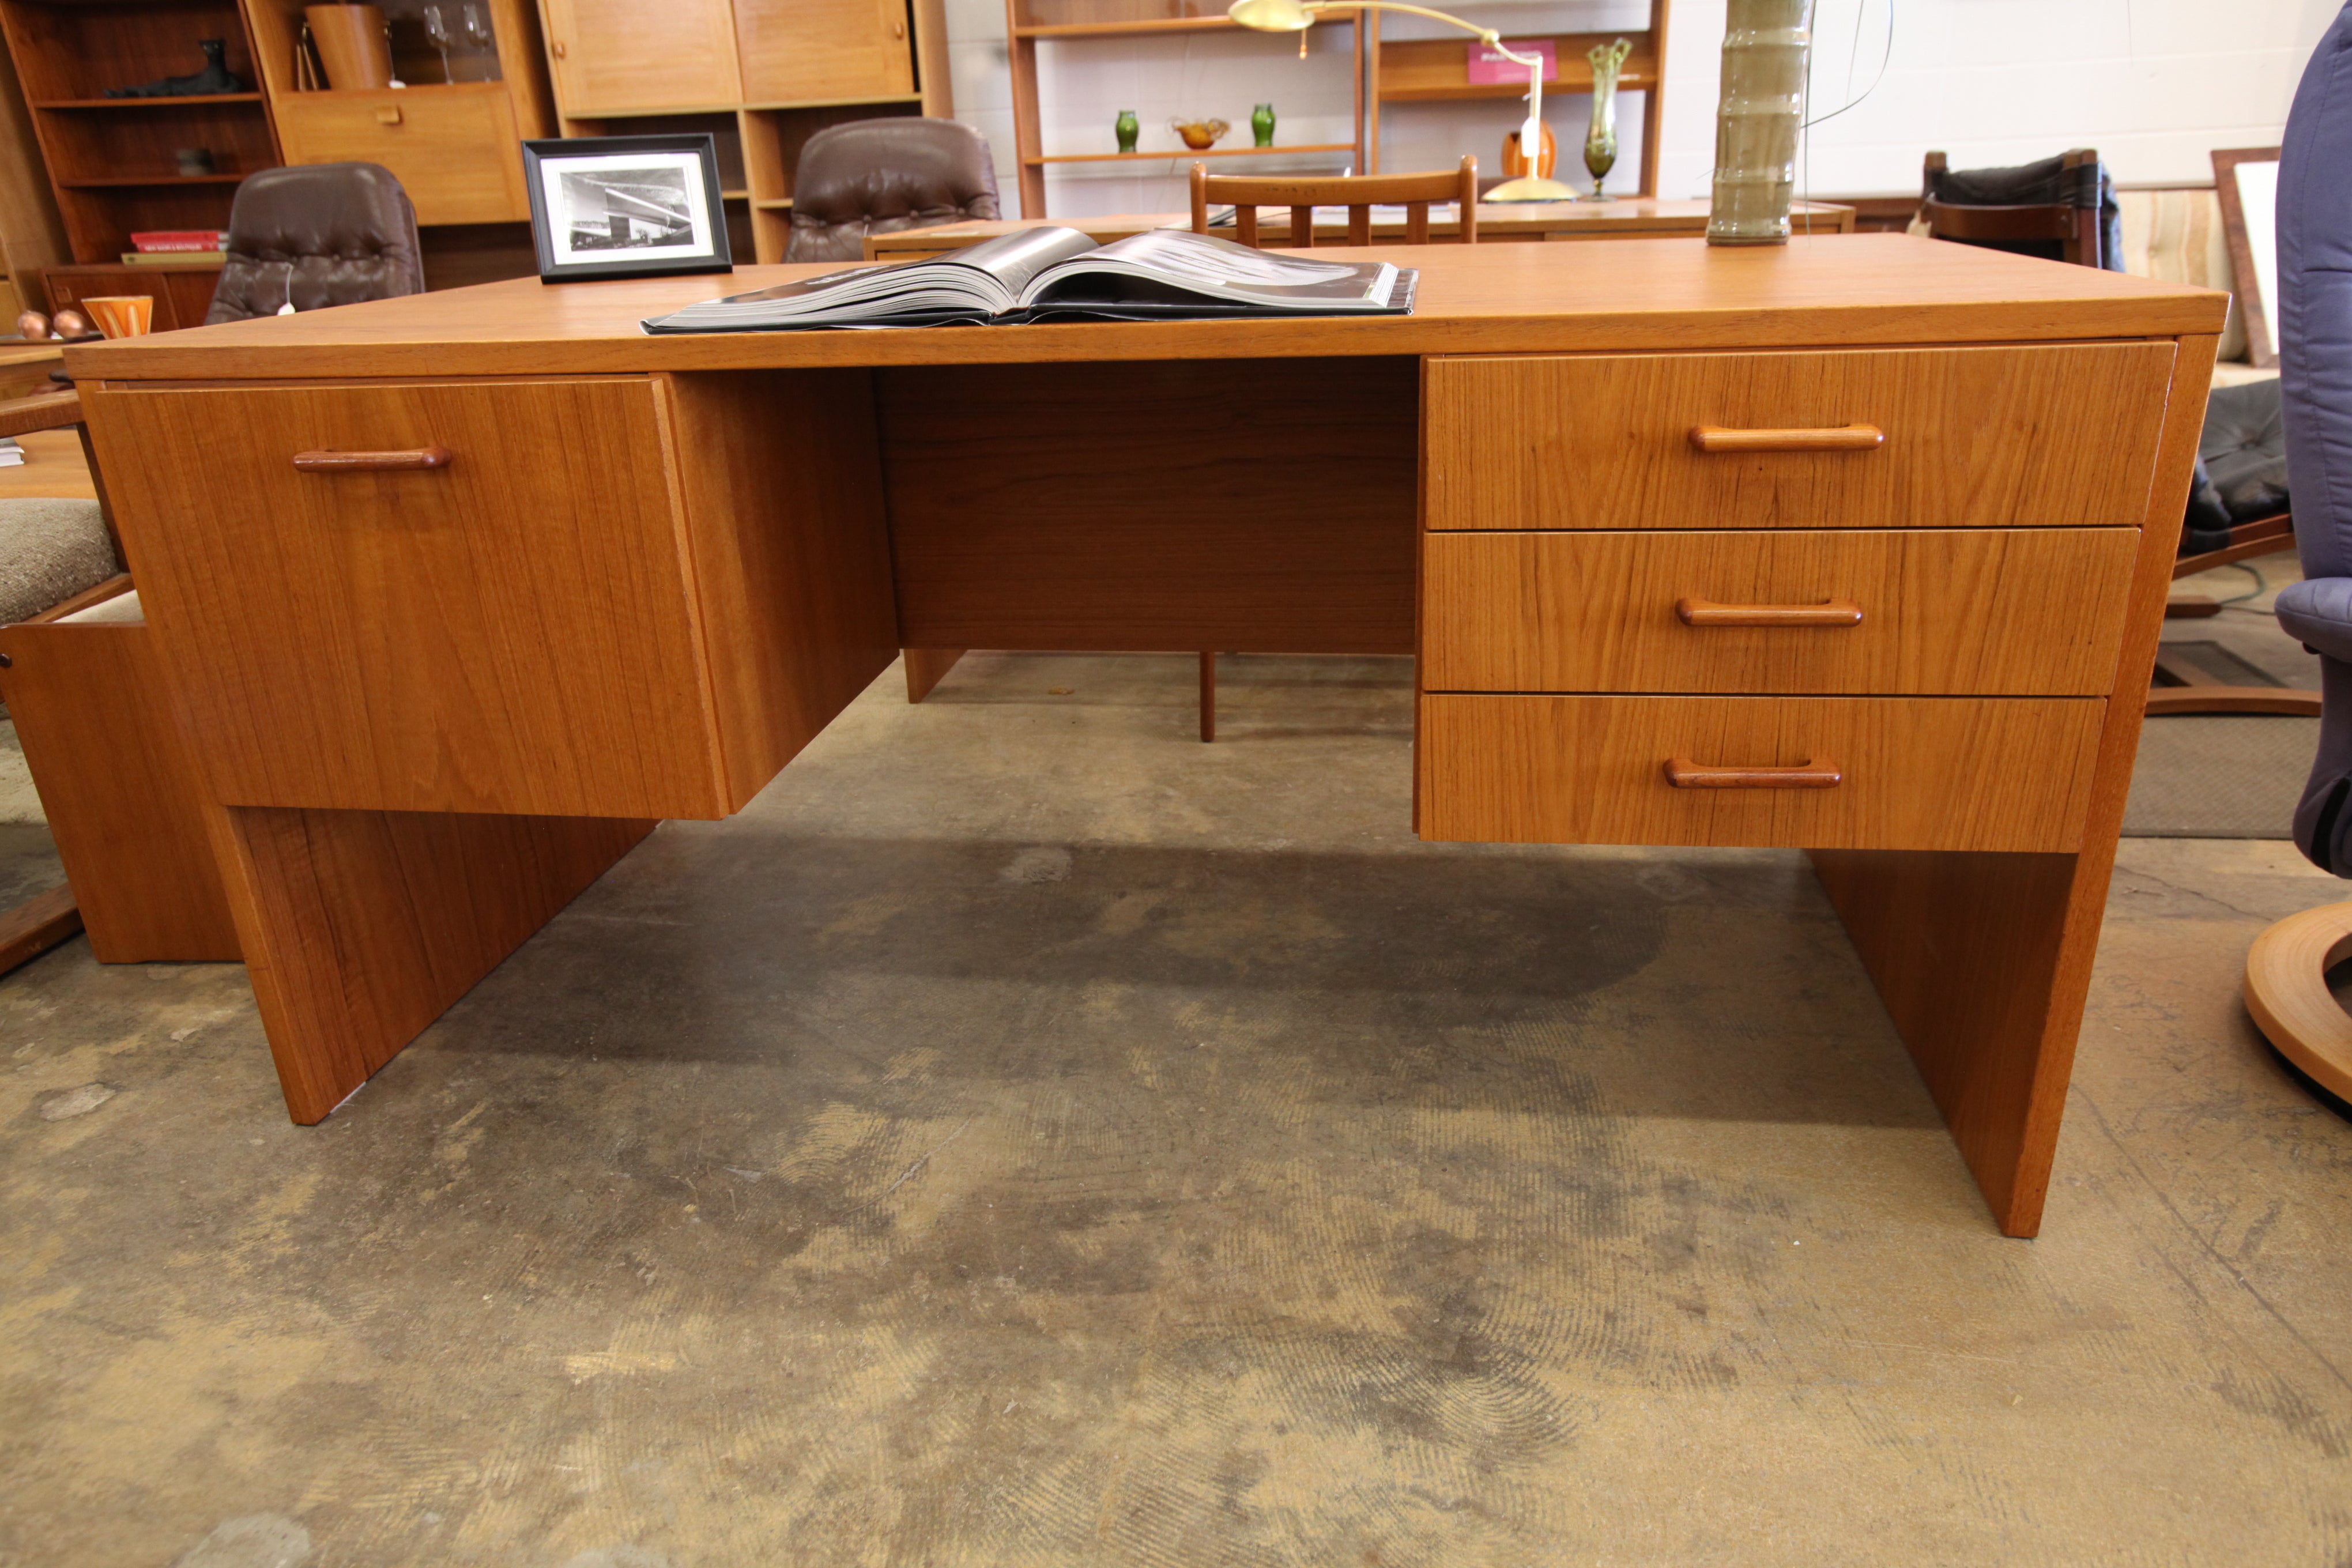 Large Vintage Teak Desk (61"W x 32"D x 28.25"H)